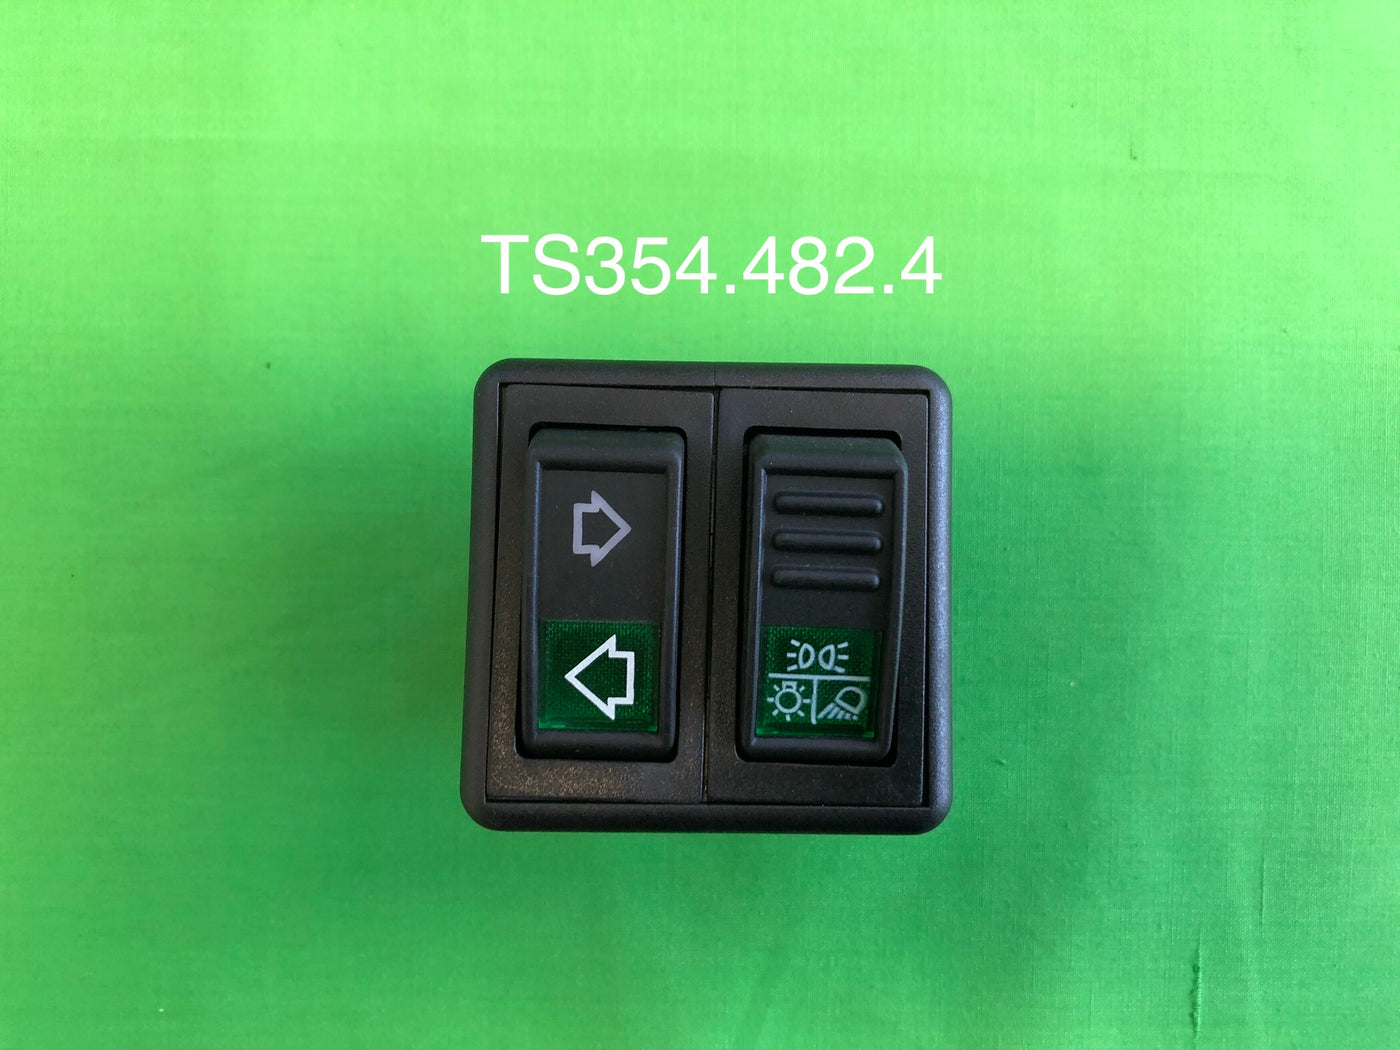 TH354.482.4 Rocker Switch